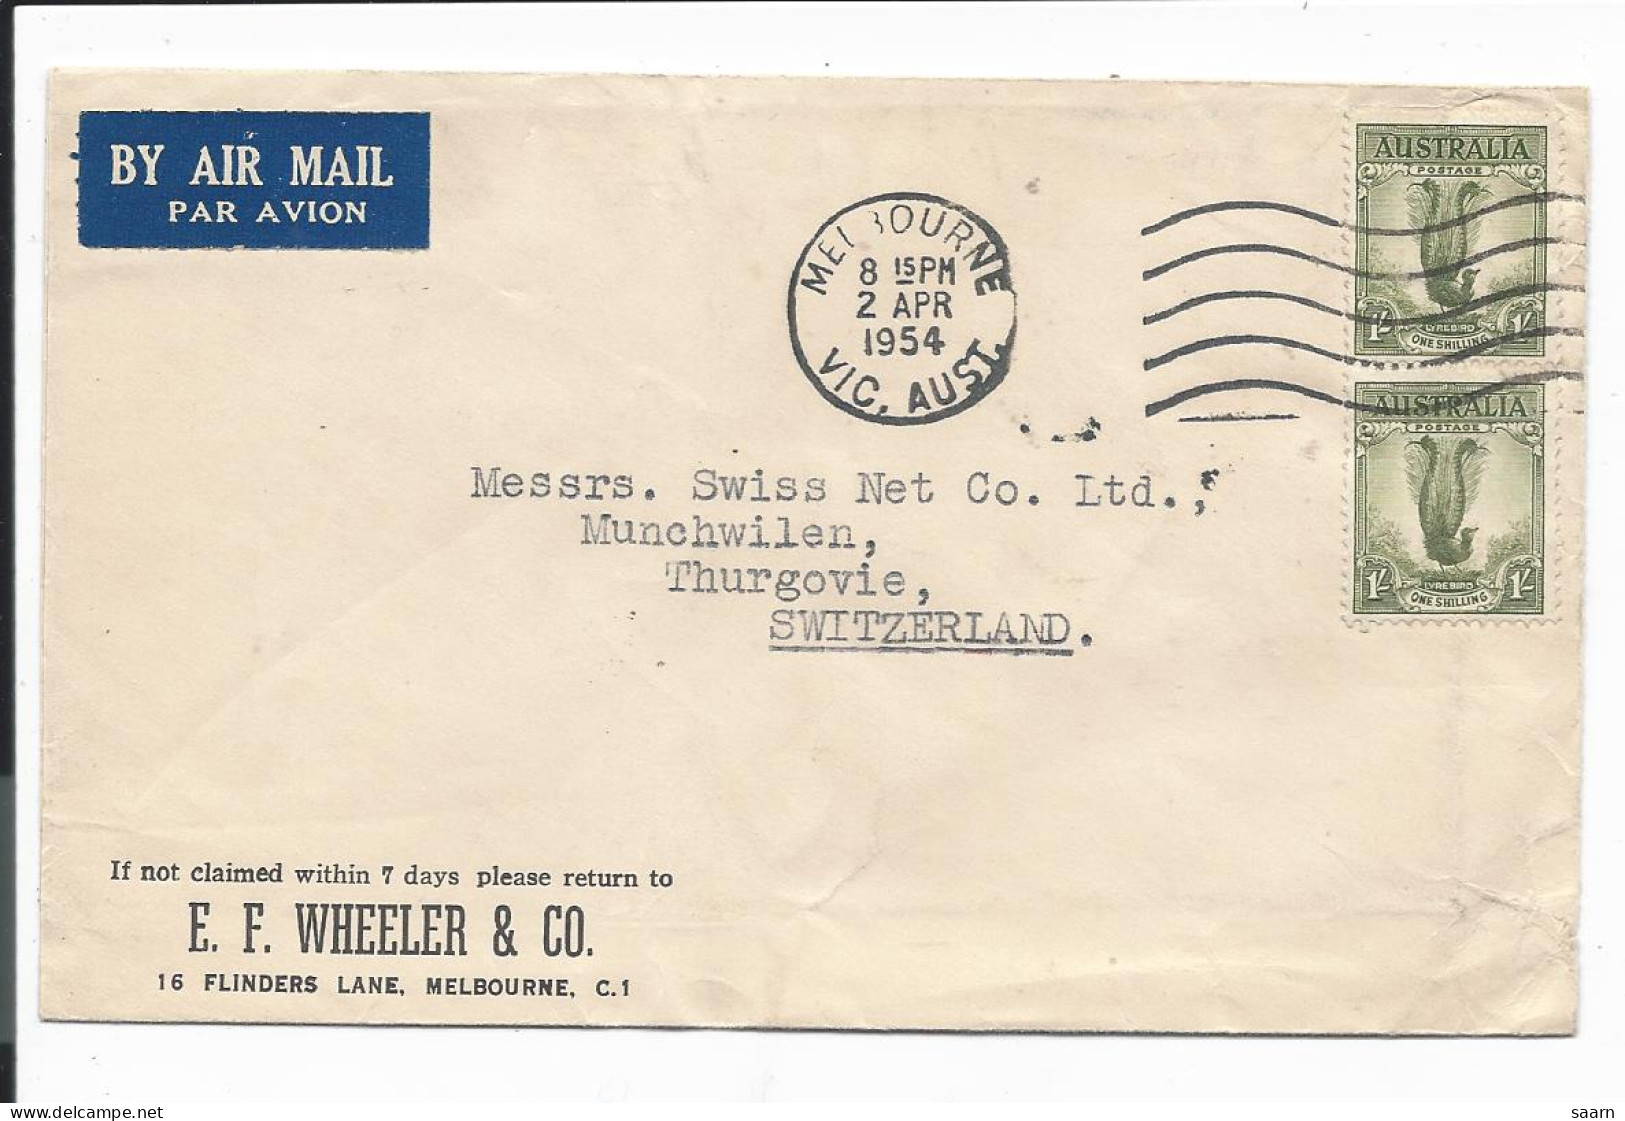 Motiv Tiere -Pfaue Auf Luftpostbrief 148 MeF 1954 Von Melbourne Australien In Die Schweiz - Paons